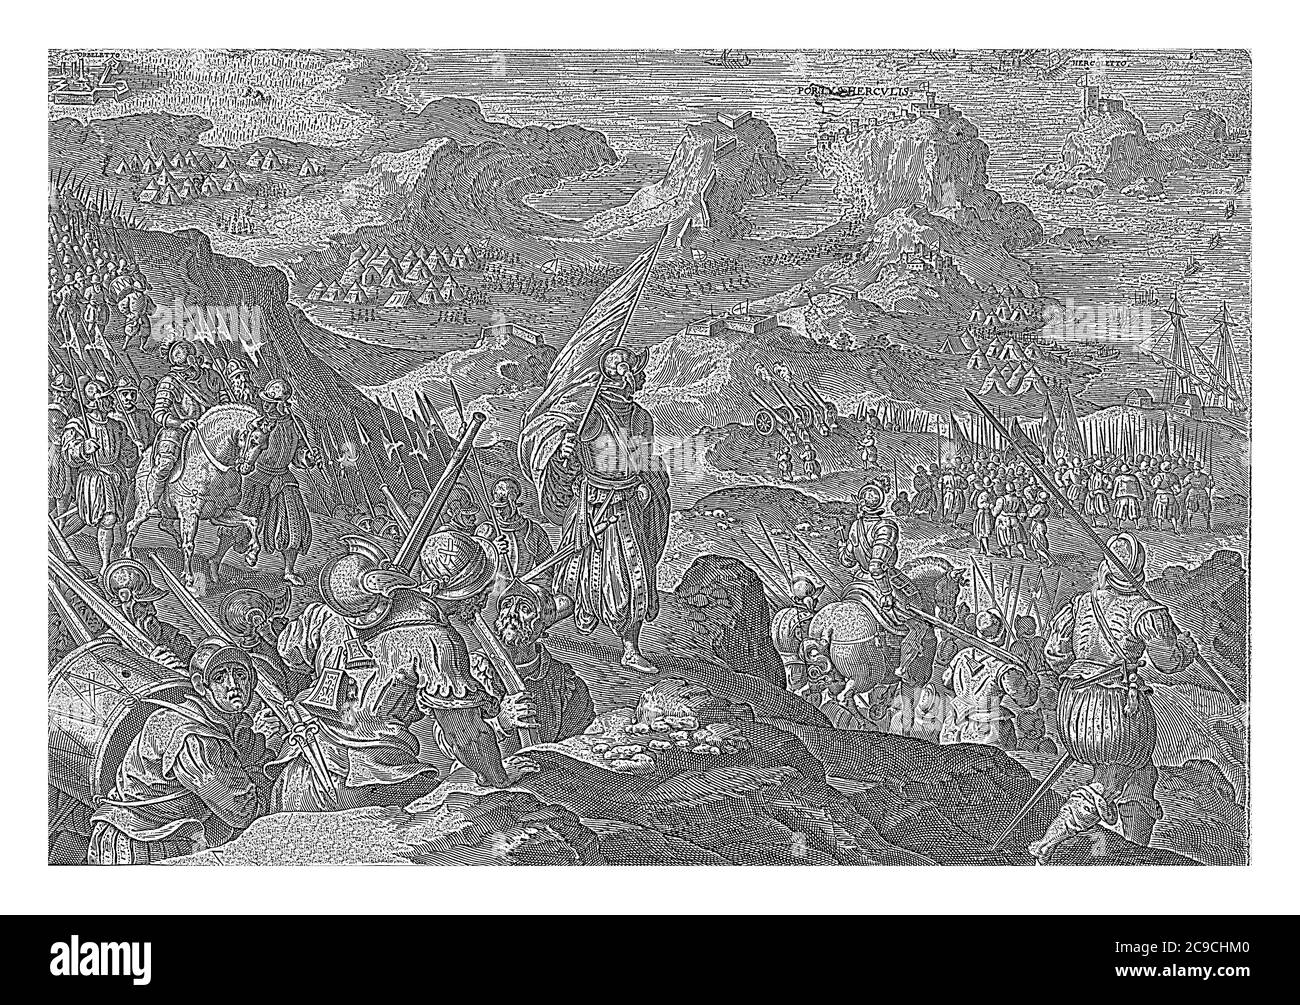 Assedio e cattura di Porto Ercole (1555). Le truppe di Cosimo i de' Medici arrivano nel paesaggio montano intorno a Porto Ercole, incisione d'epoca. Foto Stock